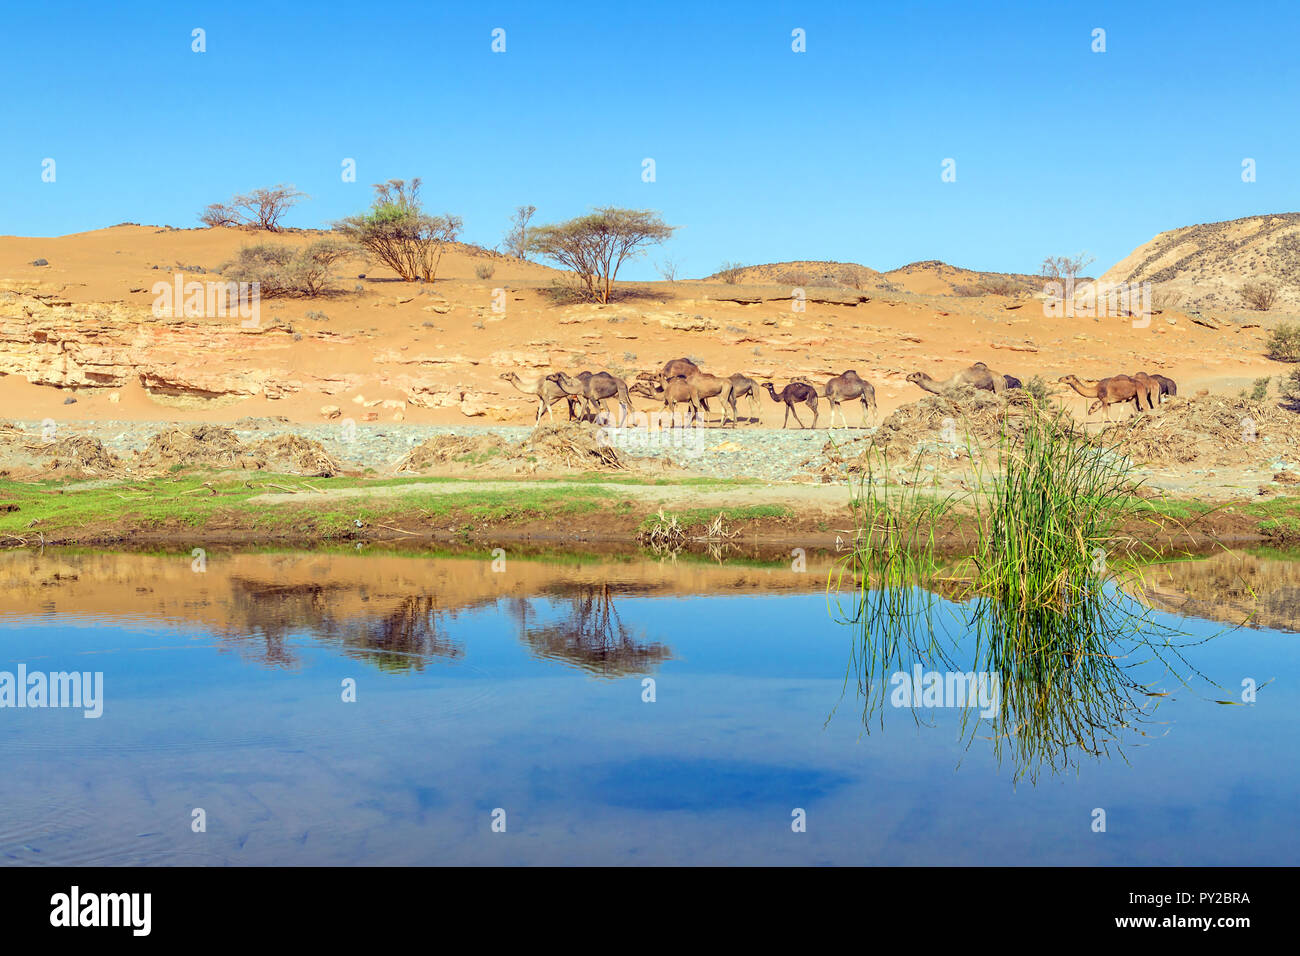 Kamele in der Wüste in der Nähe einer Wasserstelle, Saudi-Arabien Stockfoto